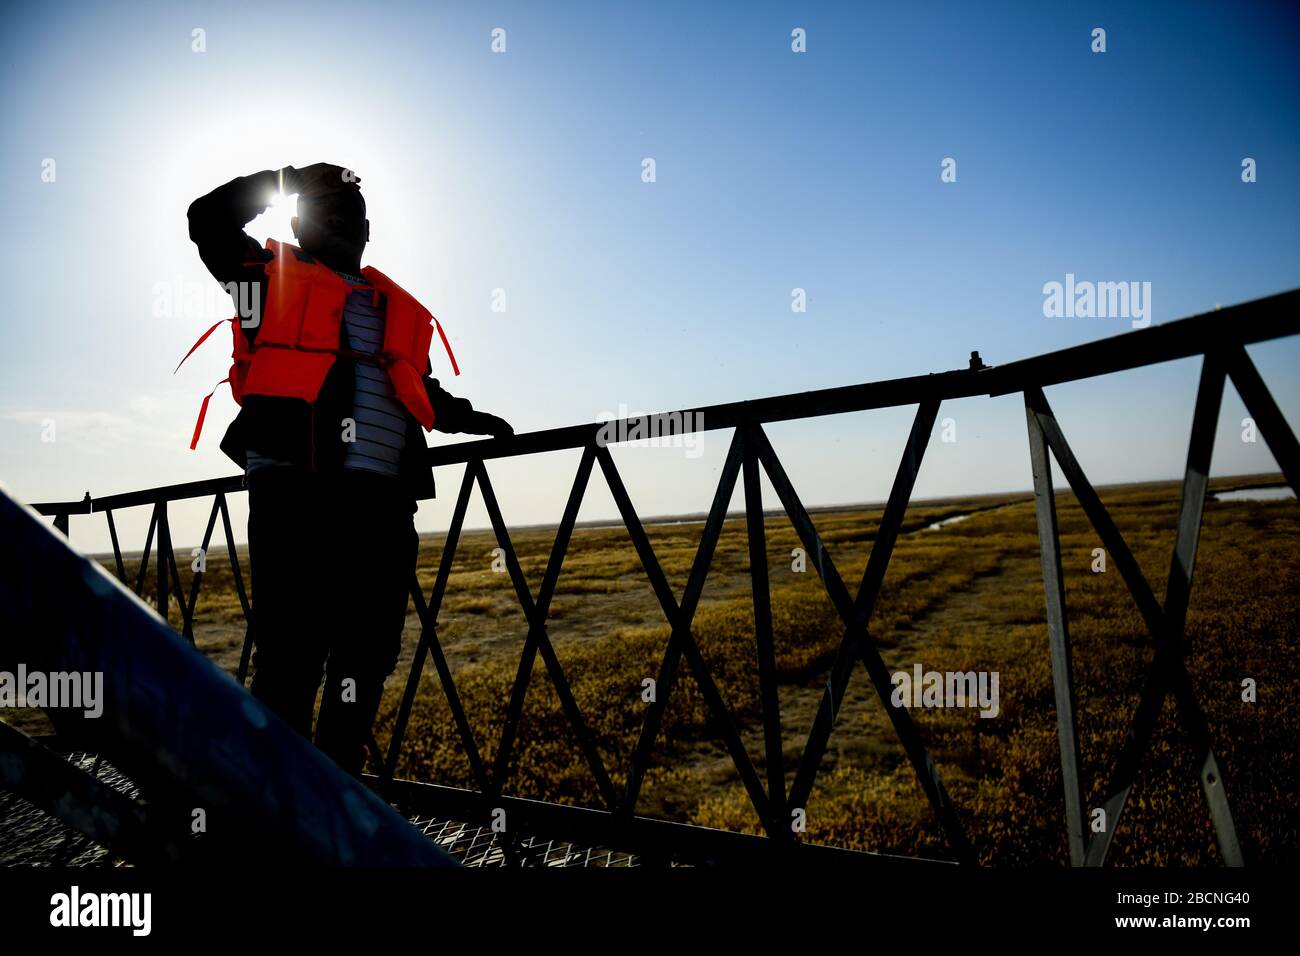 Hohhot, Región Autónoma de Mongolia Interior de China. 4 de abril de 2020. Yue Jianqiang, miembro del personal de la Reserva Natural del Lago Ulan Suhai, observa aves migratorias en una torre en el humedal del Lago Ulan Suhai en Bayannur, Región Autónoma de Mongolia Interior, al norte de China, el 4 de abril de 2020. El humedal del lago Ulan Suhai es un importante lugar de cría para aves migrantes como cisnes mudos. A medida que su período de desove comenzó a finales de marzo, el personal de la reserva natural ha fortalecido los esfuerzos de patrulla y protección para vigilar las condiciones de vida y reproducción de las aves. Crédito: Lian Zhen/Xinhua/Alamy Live News Foto de stock